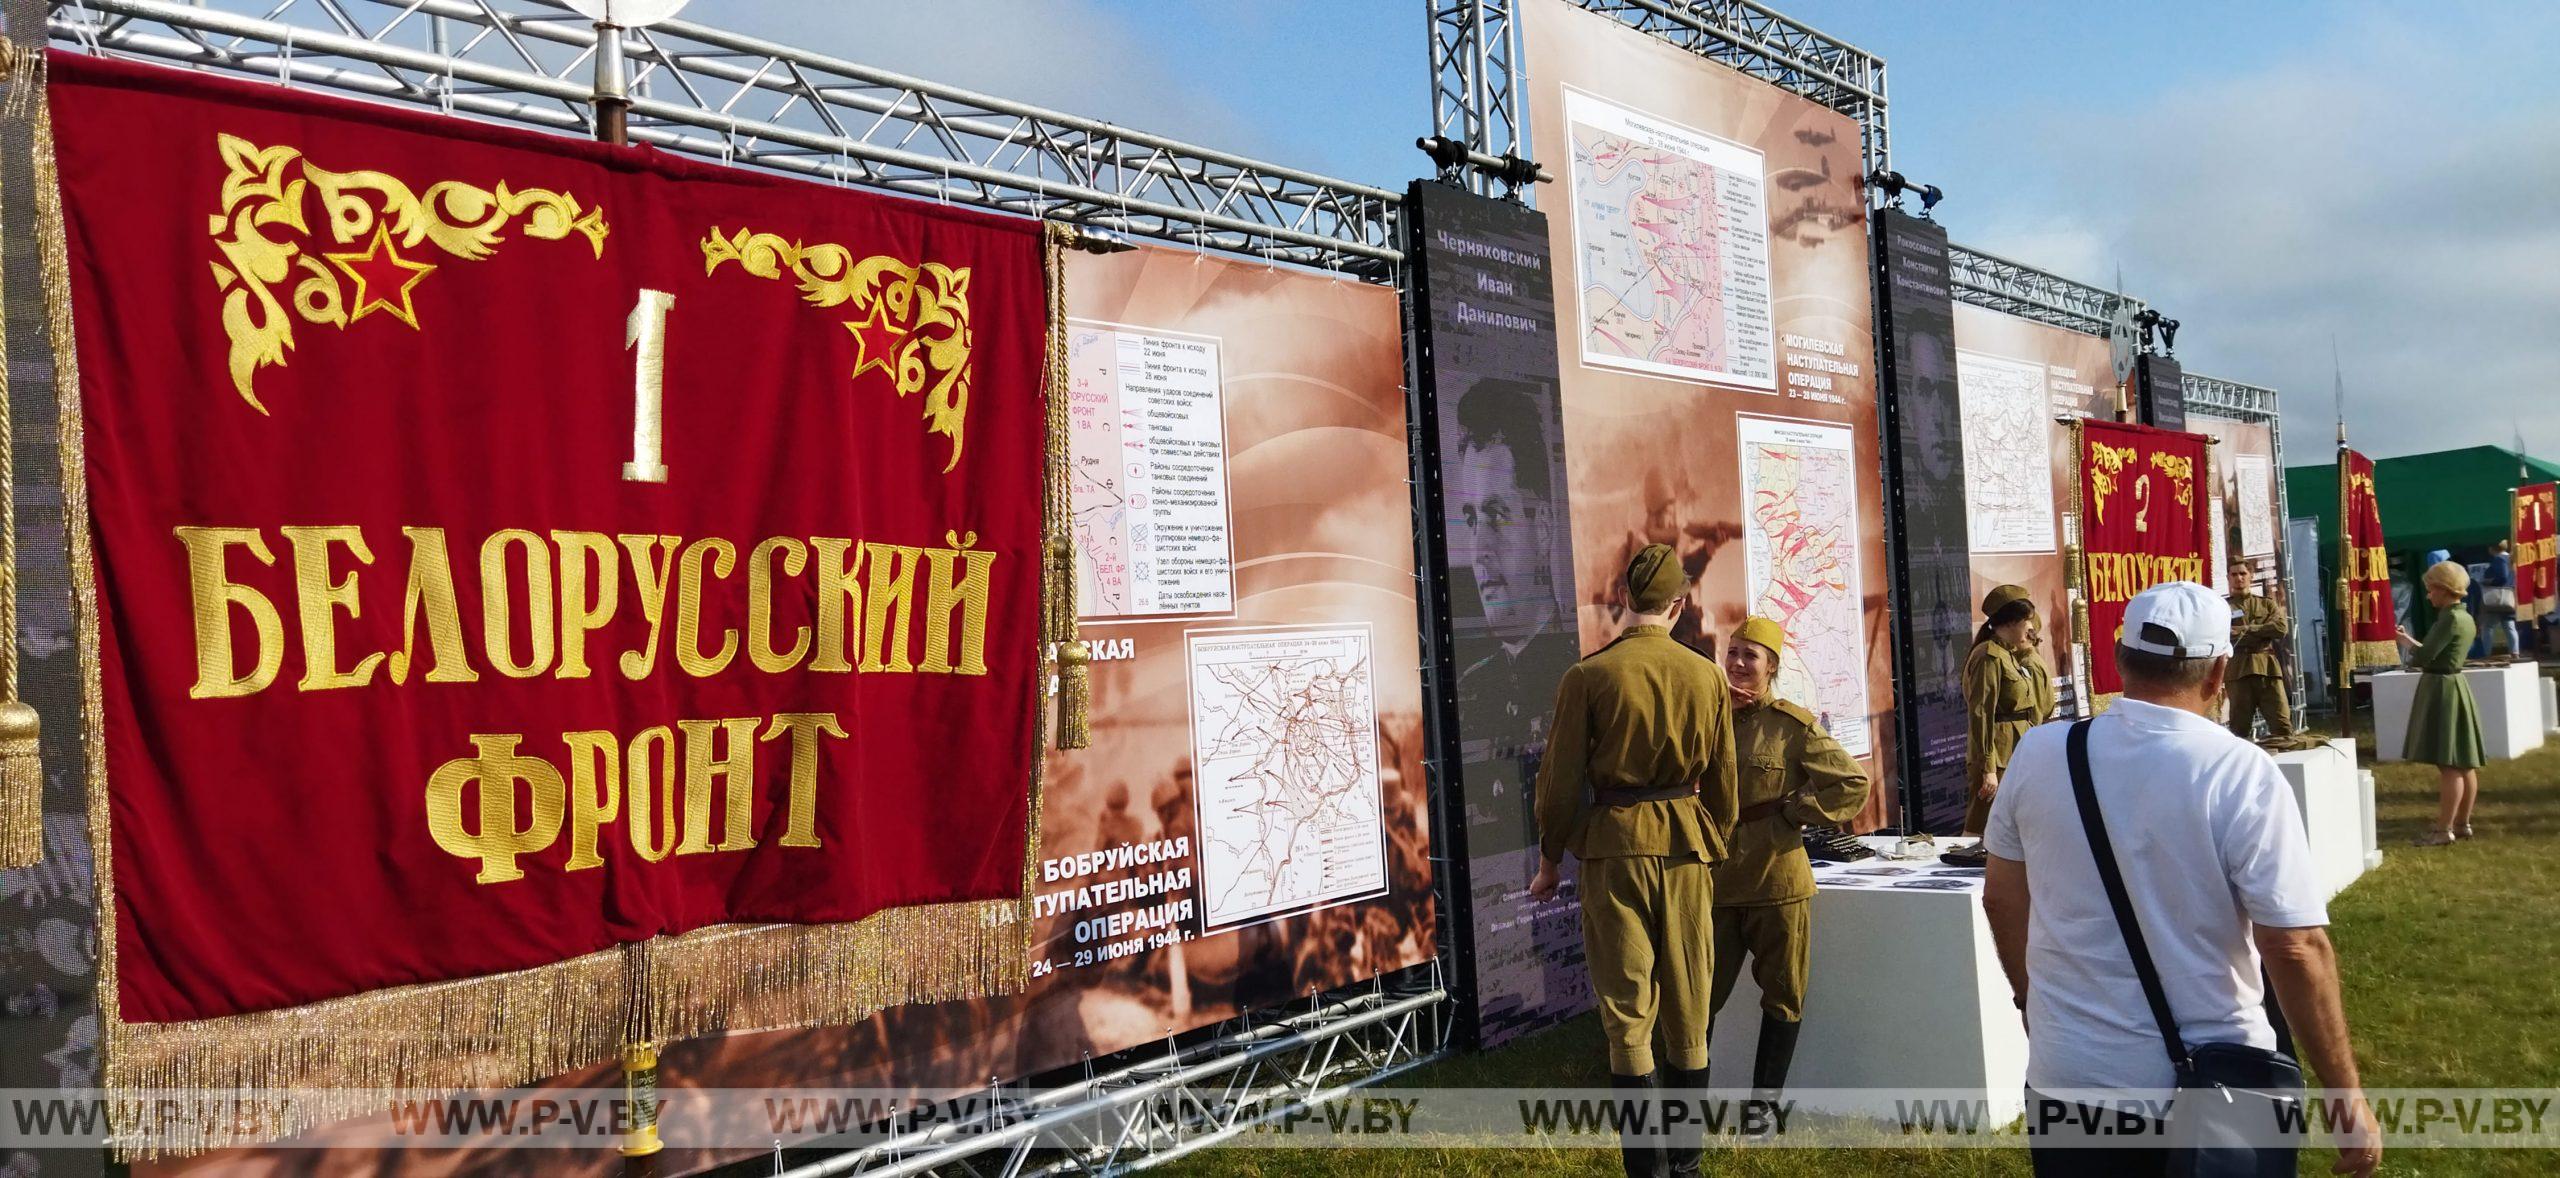 Пинчане приняли участие в мероприятиях, посвященных Дню Республики в Минске